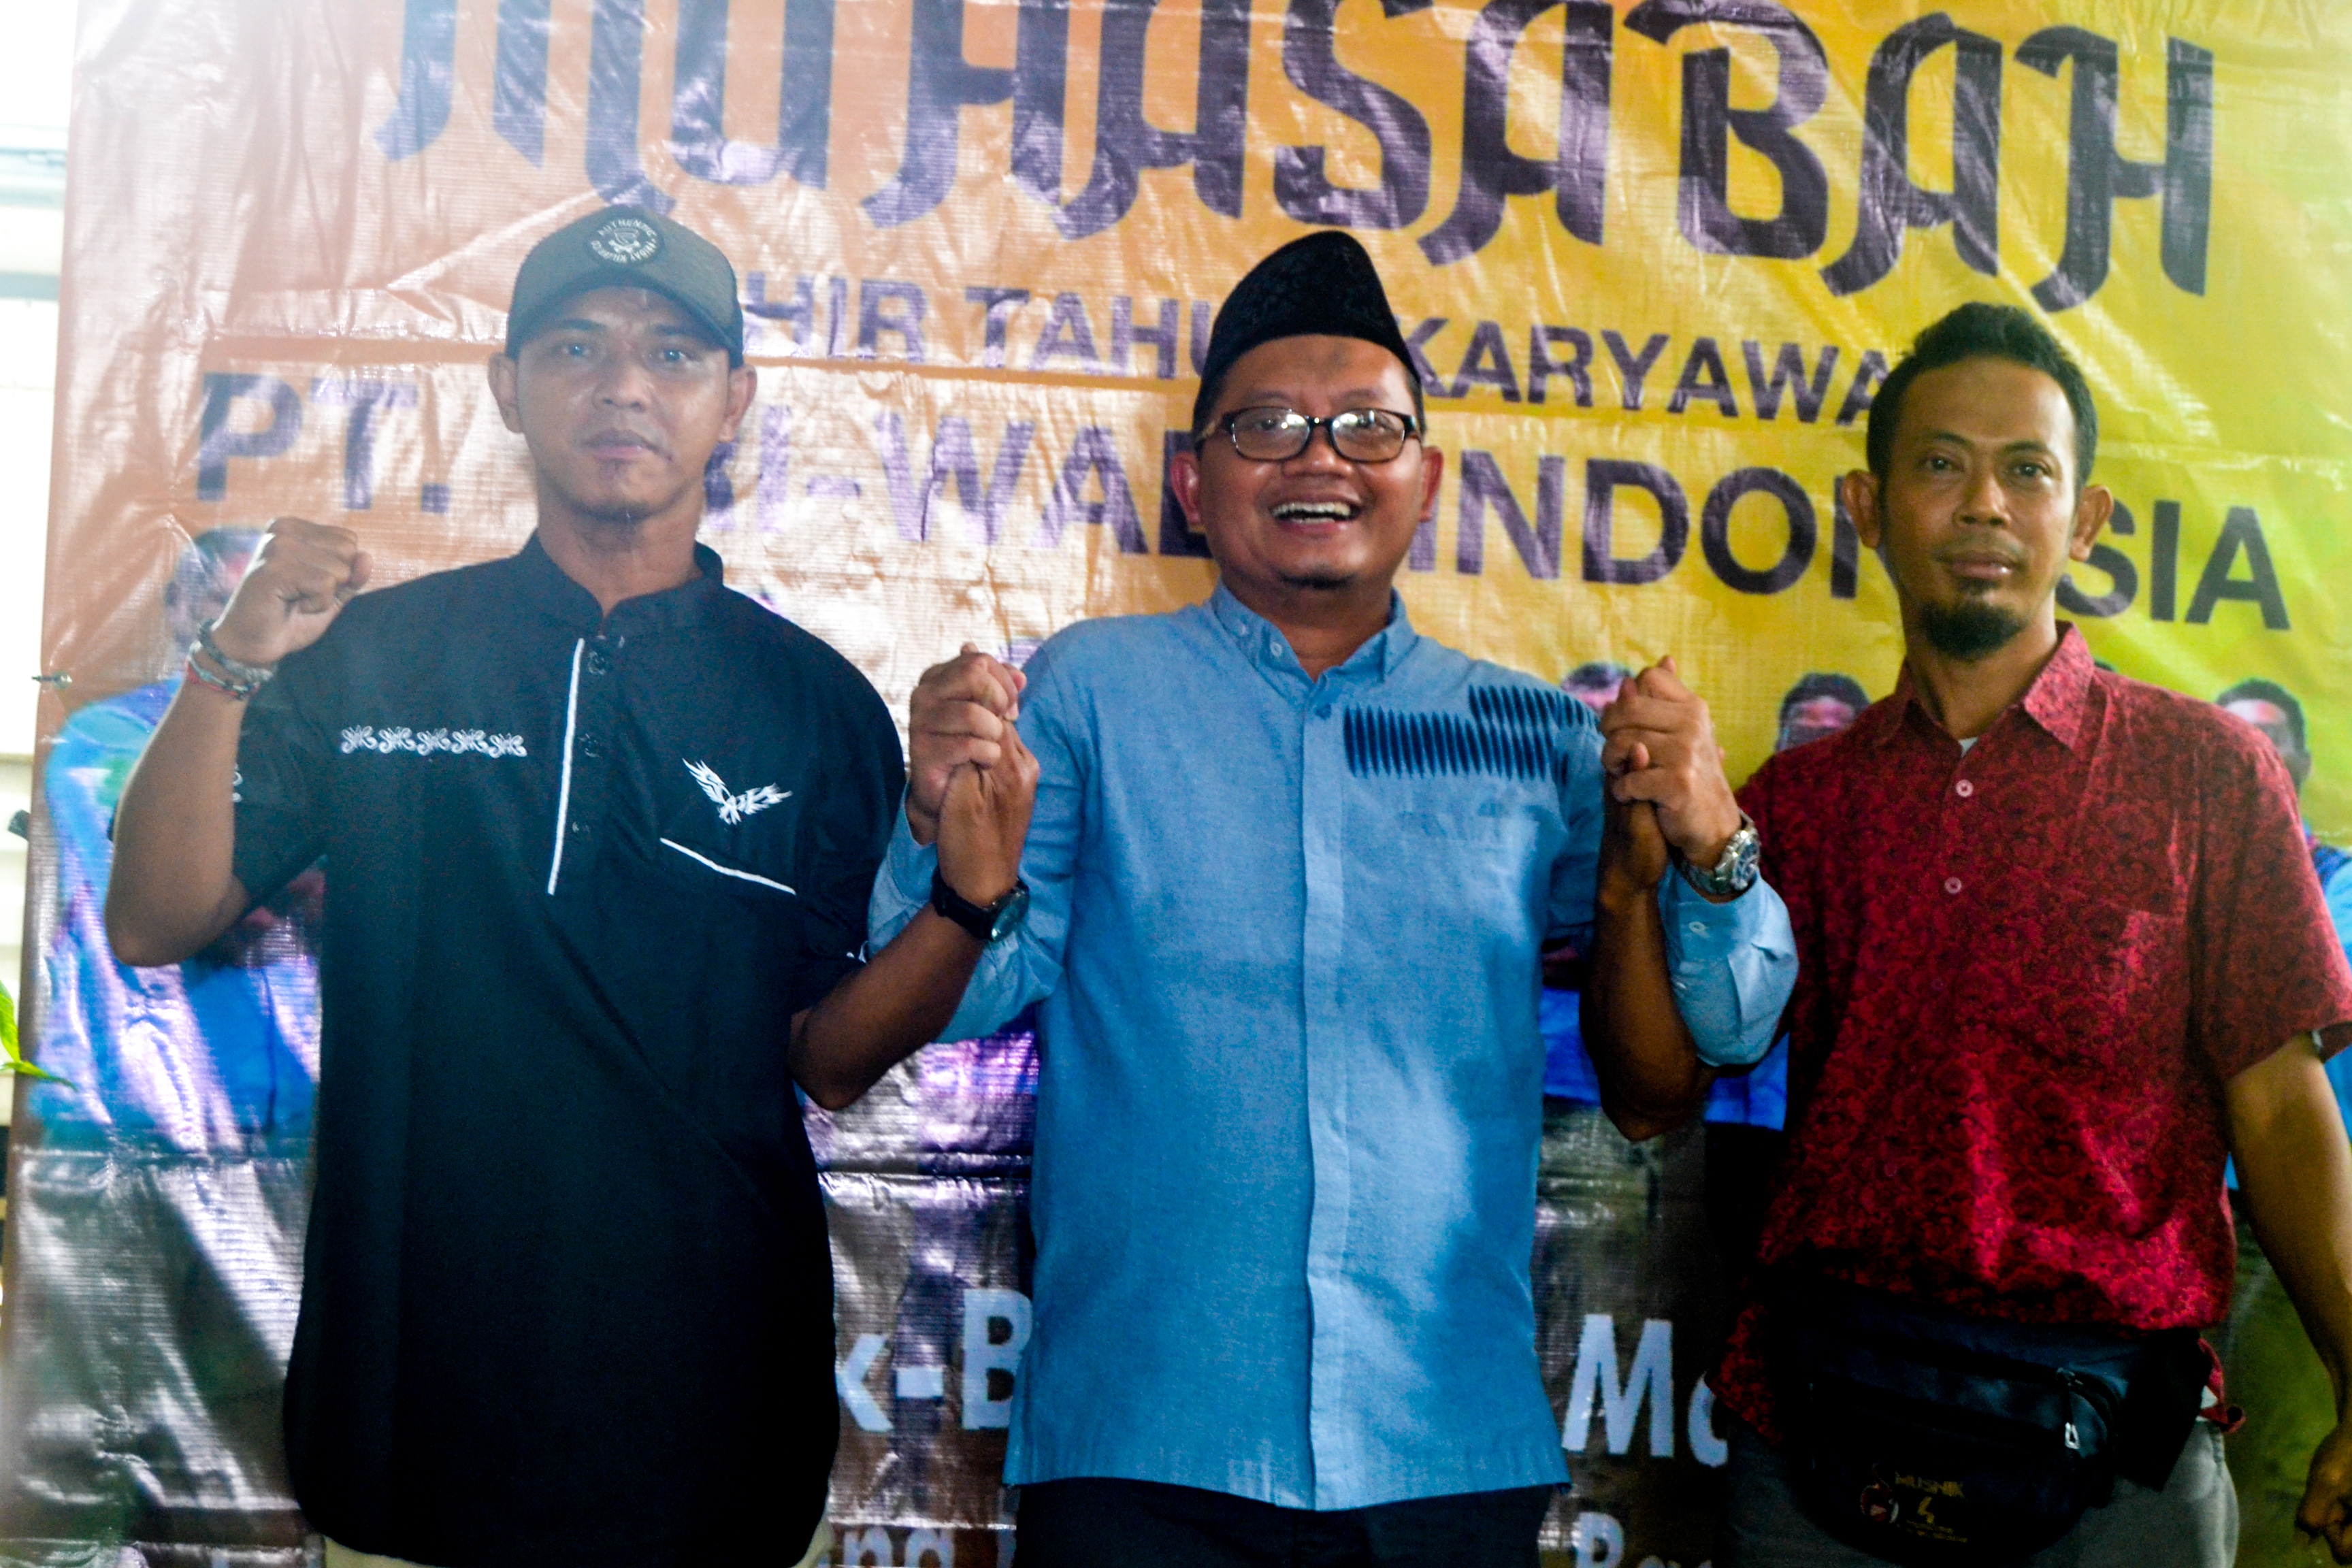 Nurdiansyah dan Marsan Karyawan PT. Tri-Wall Indonesia Dapatkan Paket Umroh